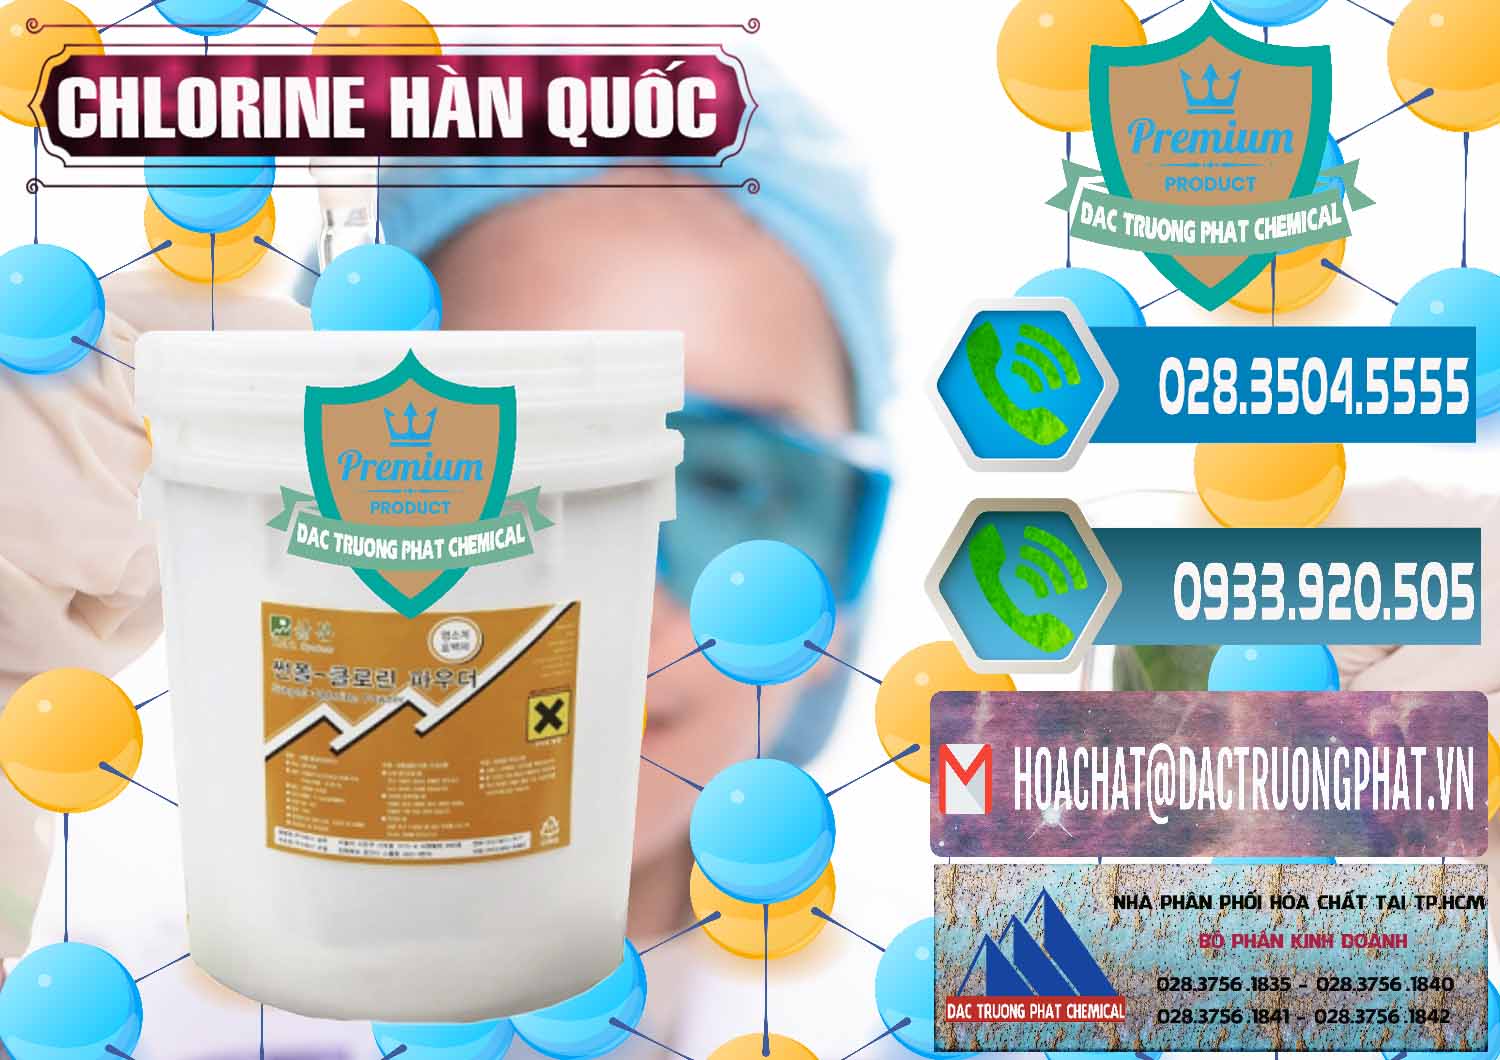 Cty chuyên bán và phân phối Chlorine – Clorin 70% Hàn Quốc Korea - 0345 - Nơi chuyên cung cấp - bán hóa chất tại TP.HCM - congtyhoachat.net